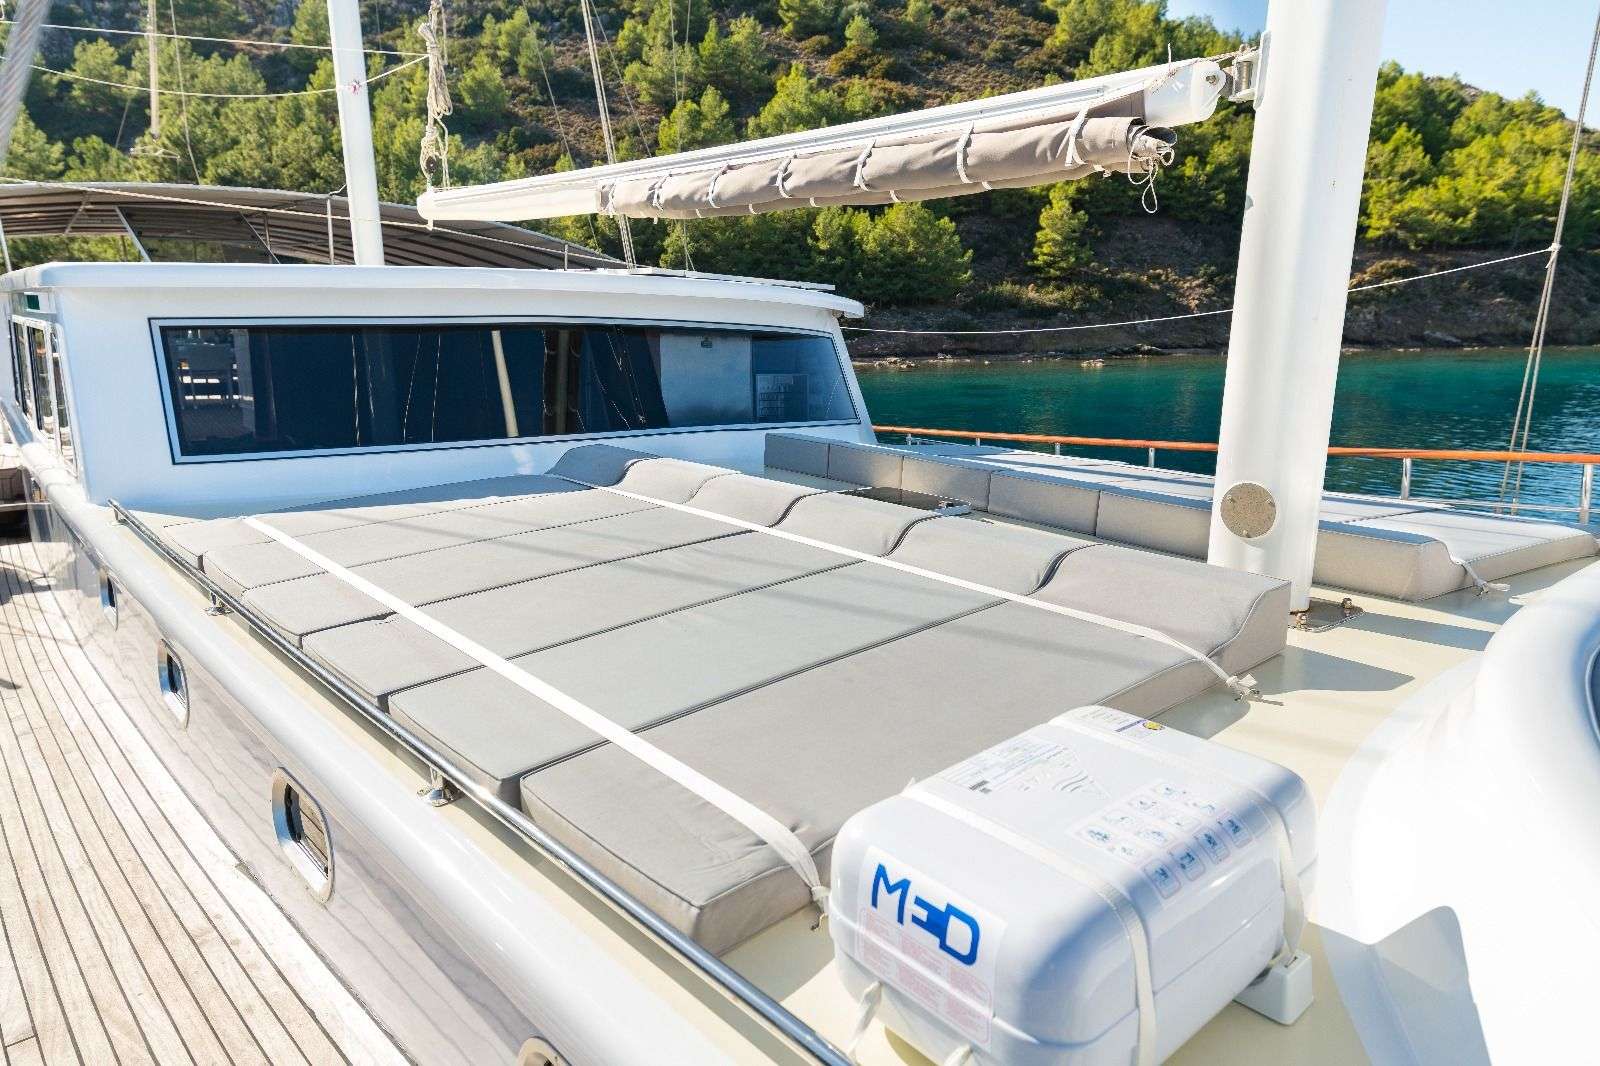 koray ege - Motor Boat Charter Greece & Boat hire in Greece & Turkey 3